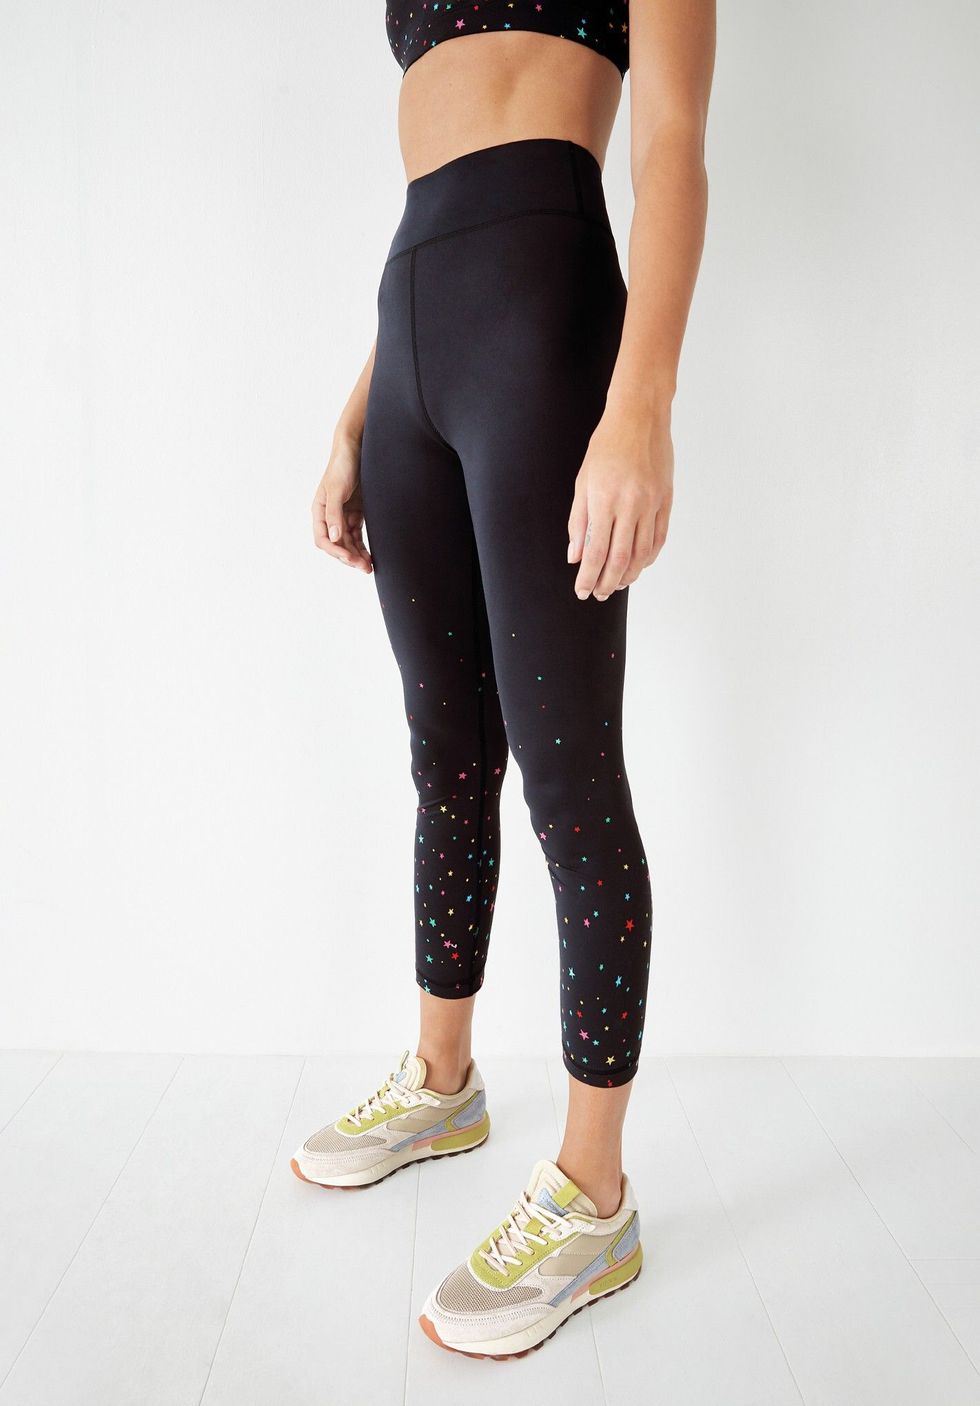 Best Deal for Christmas Yoga Pants for Women Christmas Running Leggings